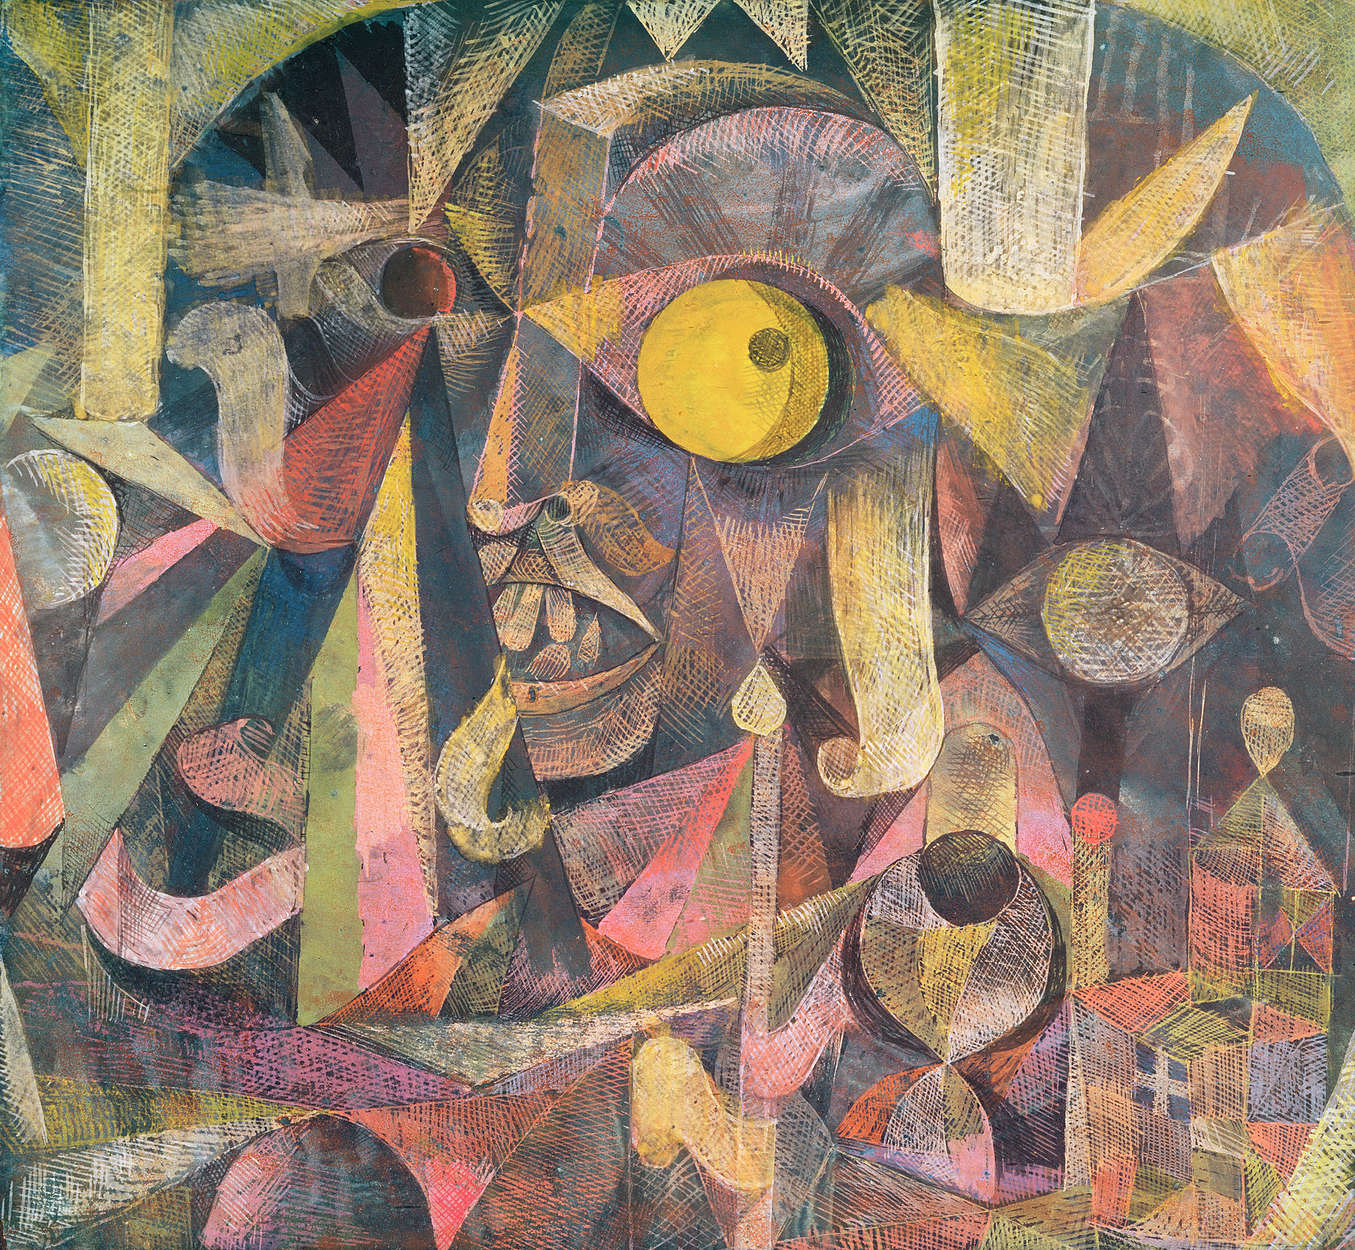             Papier peint "La Lune Etait sur le Declin " de Paul Klee
        